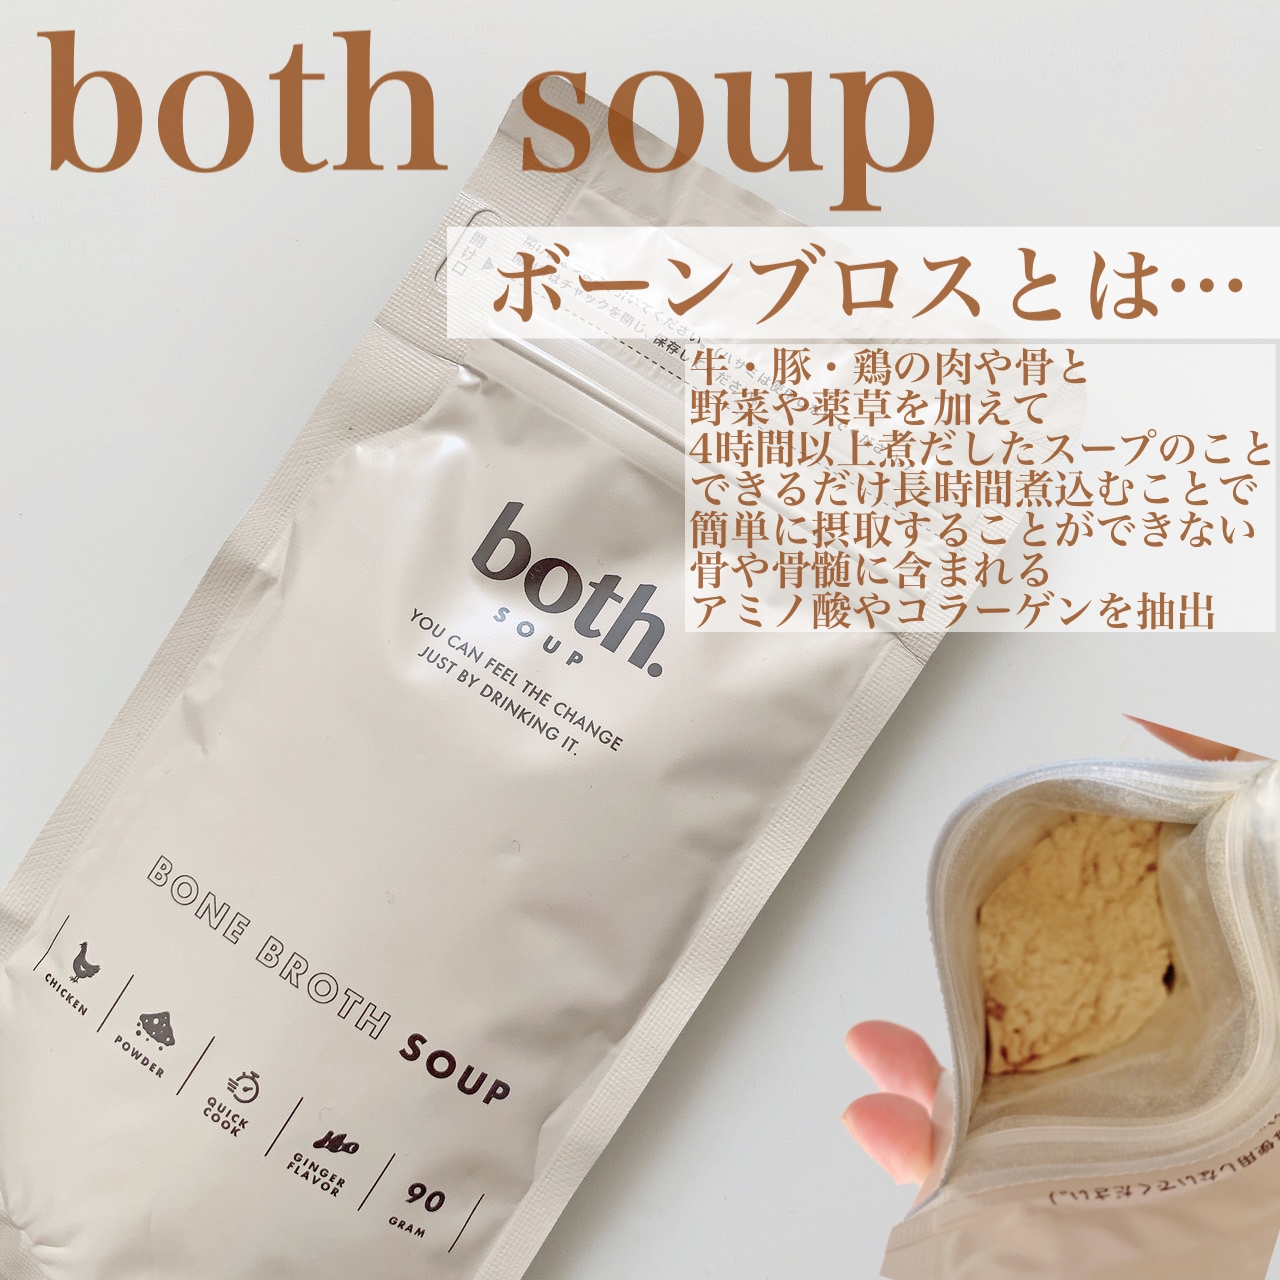 both.Soup(ボススープ) ボーンブロススープの良い点・メリットに関するまみやこさんの口コミ画像2